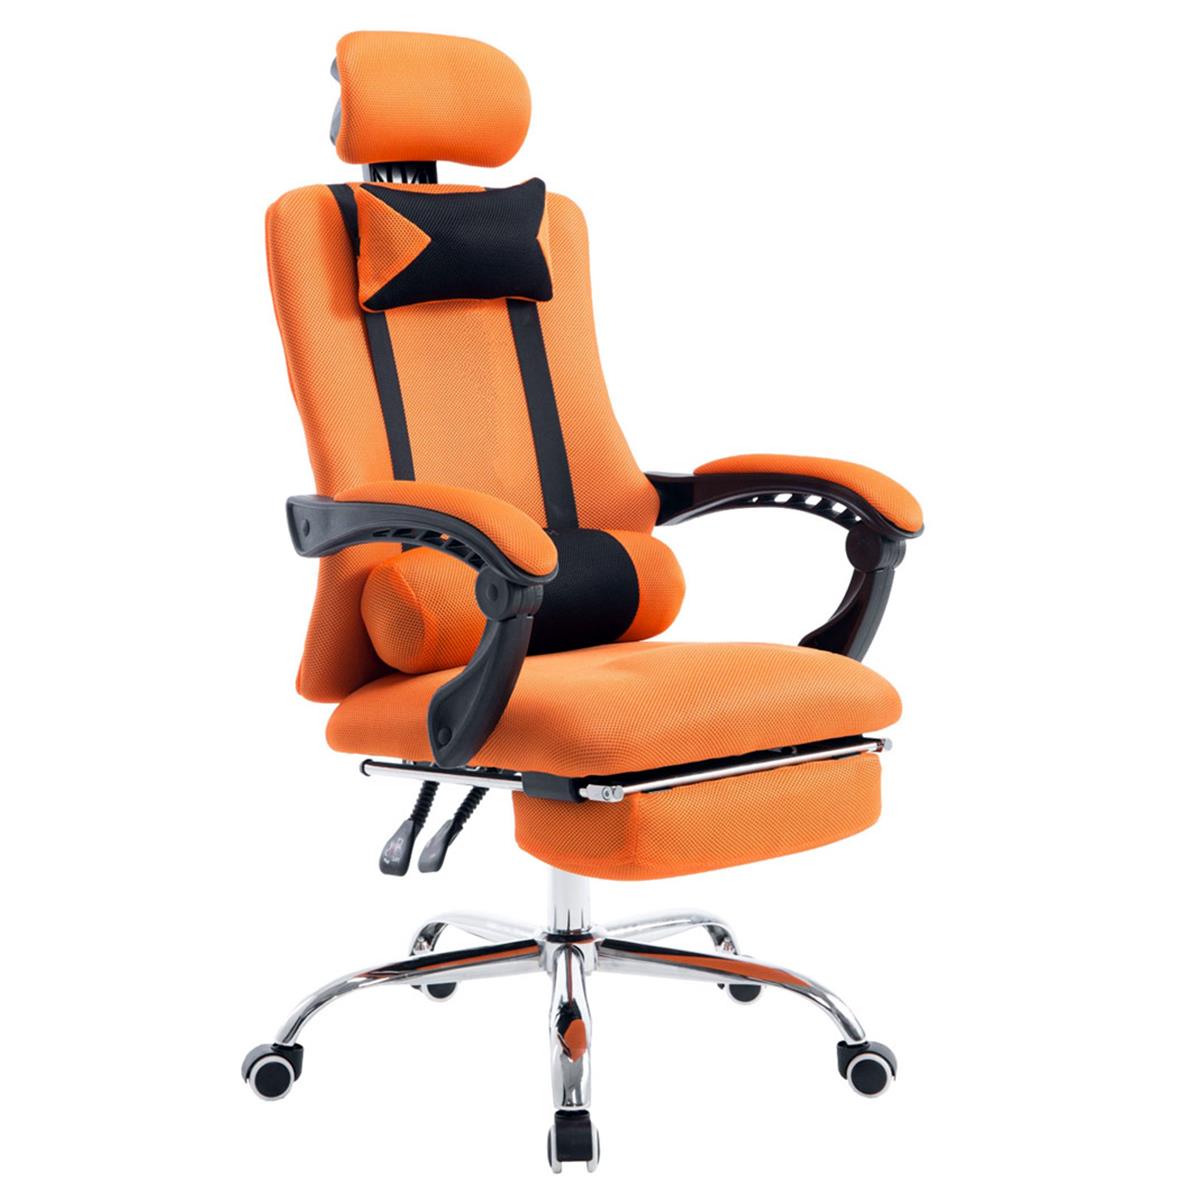 Gaming-Stuhl ANTARES, ausziehbare Fußablage, atmungsaktiver Netzbezug, Farbe Orange